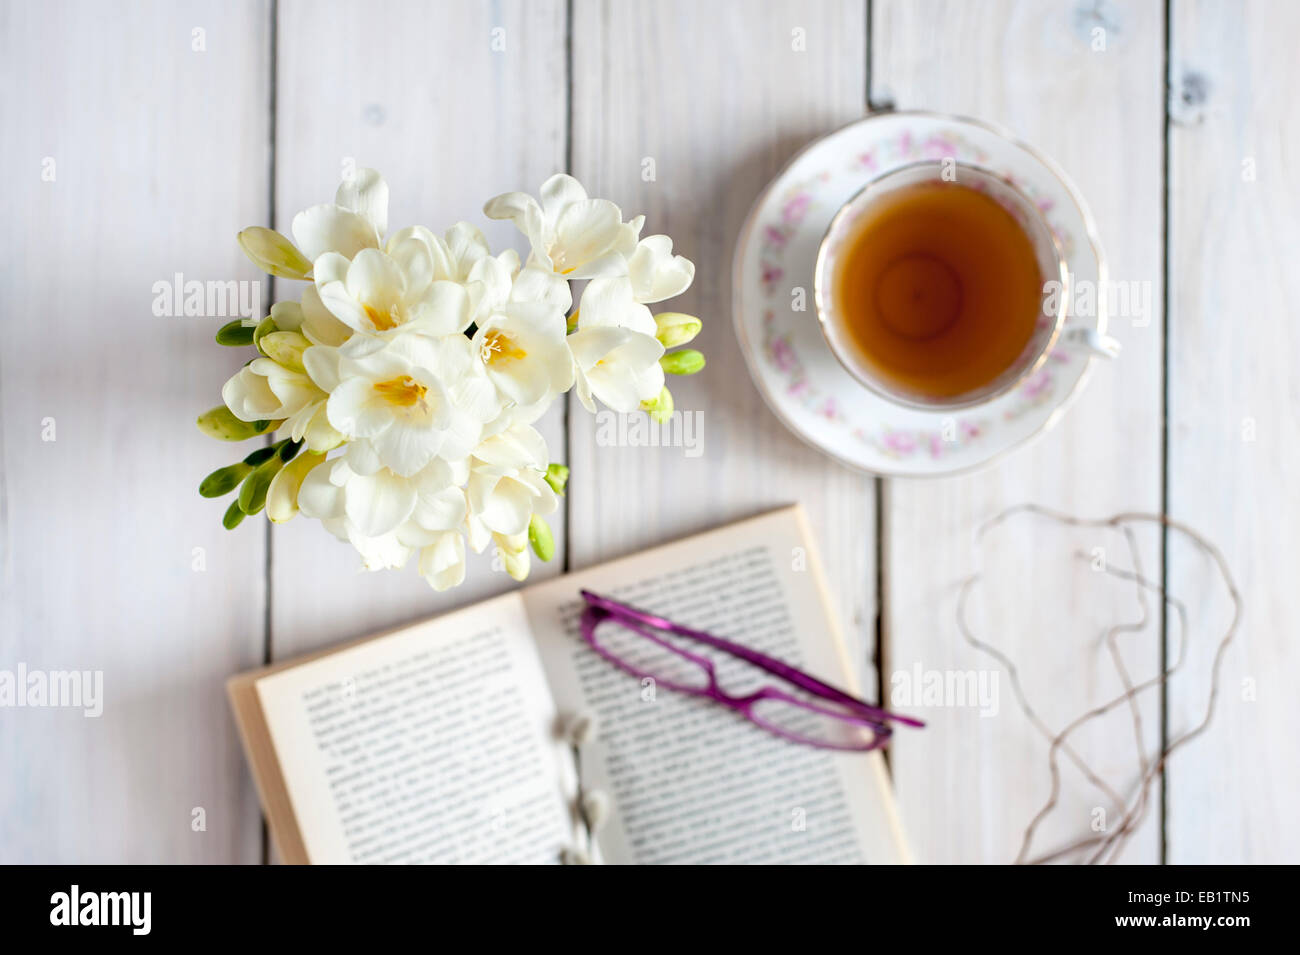 La hora del té - té servido en vaso vintage con posy de fresias, libro blanco y gafas Foto de stock